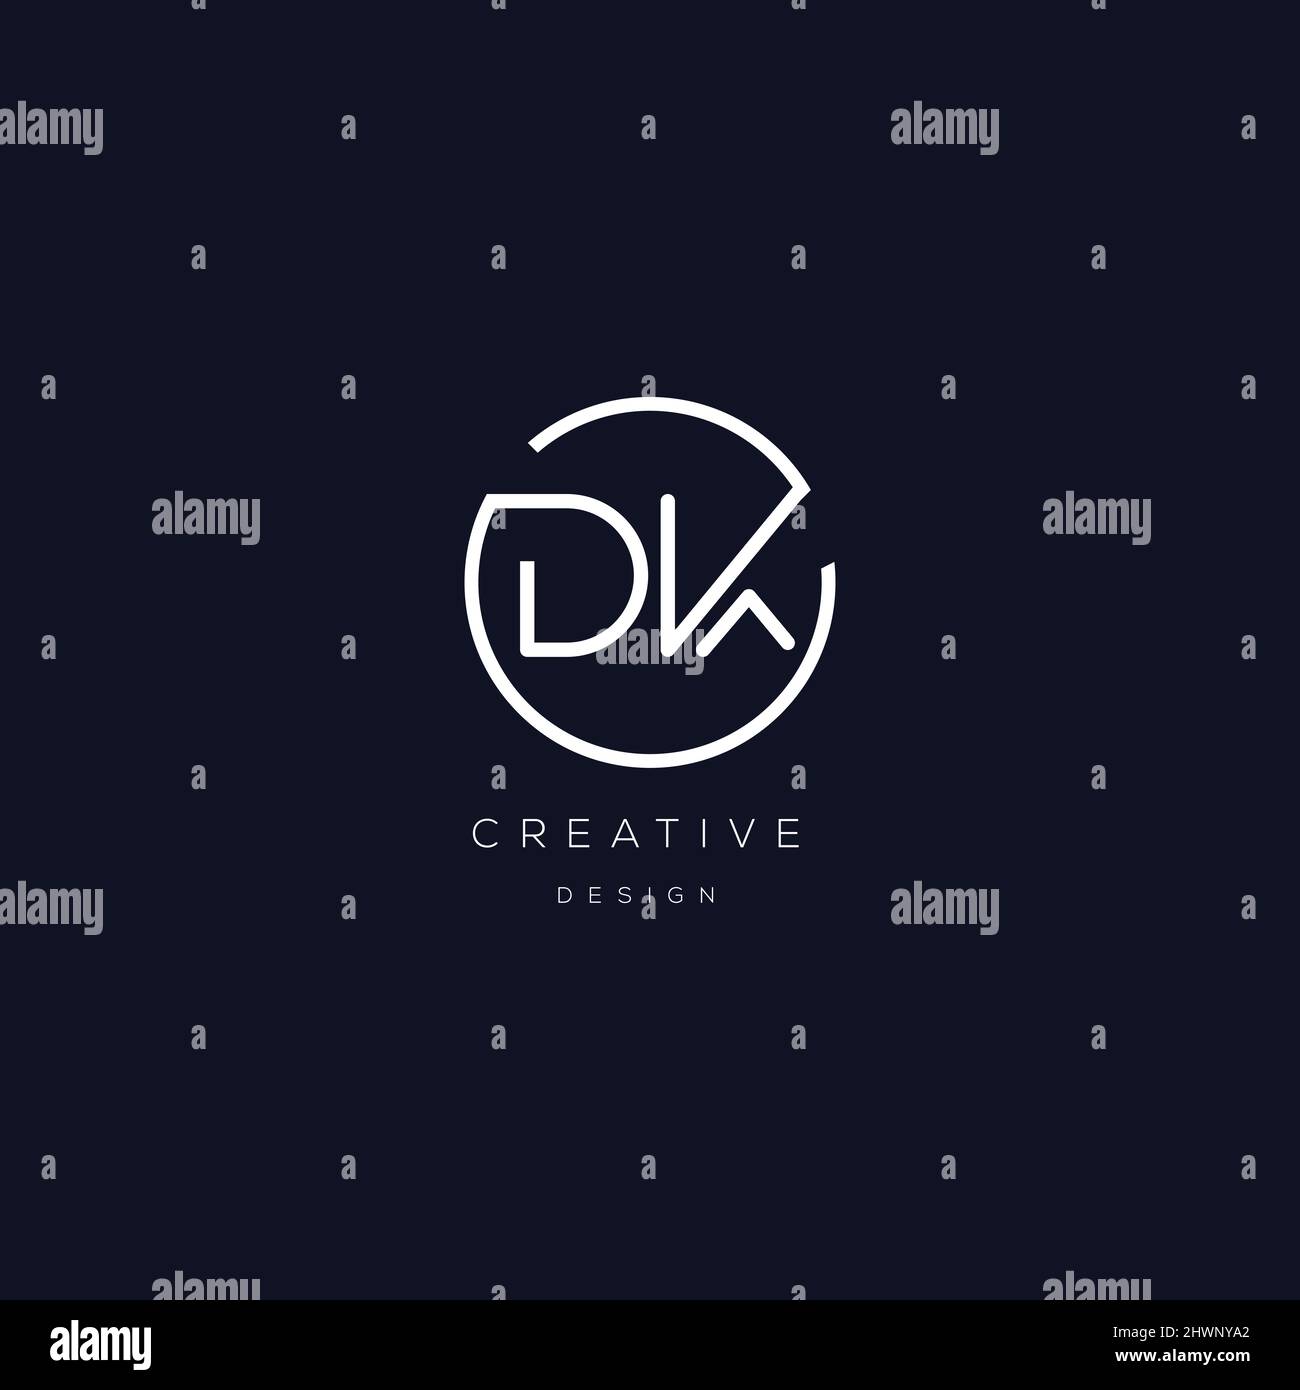 DK logo letter modern design Stock Vector Image & Art - Alamy